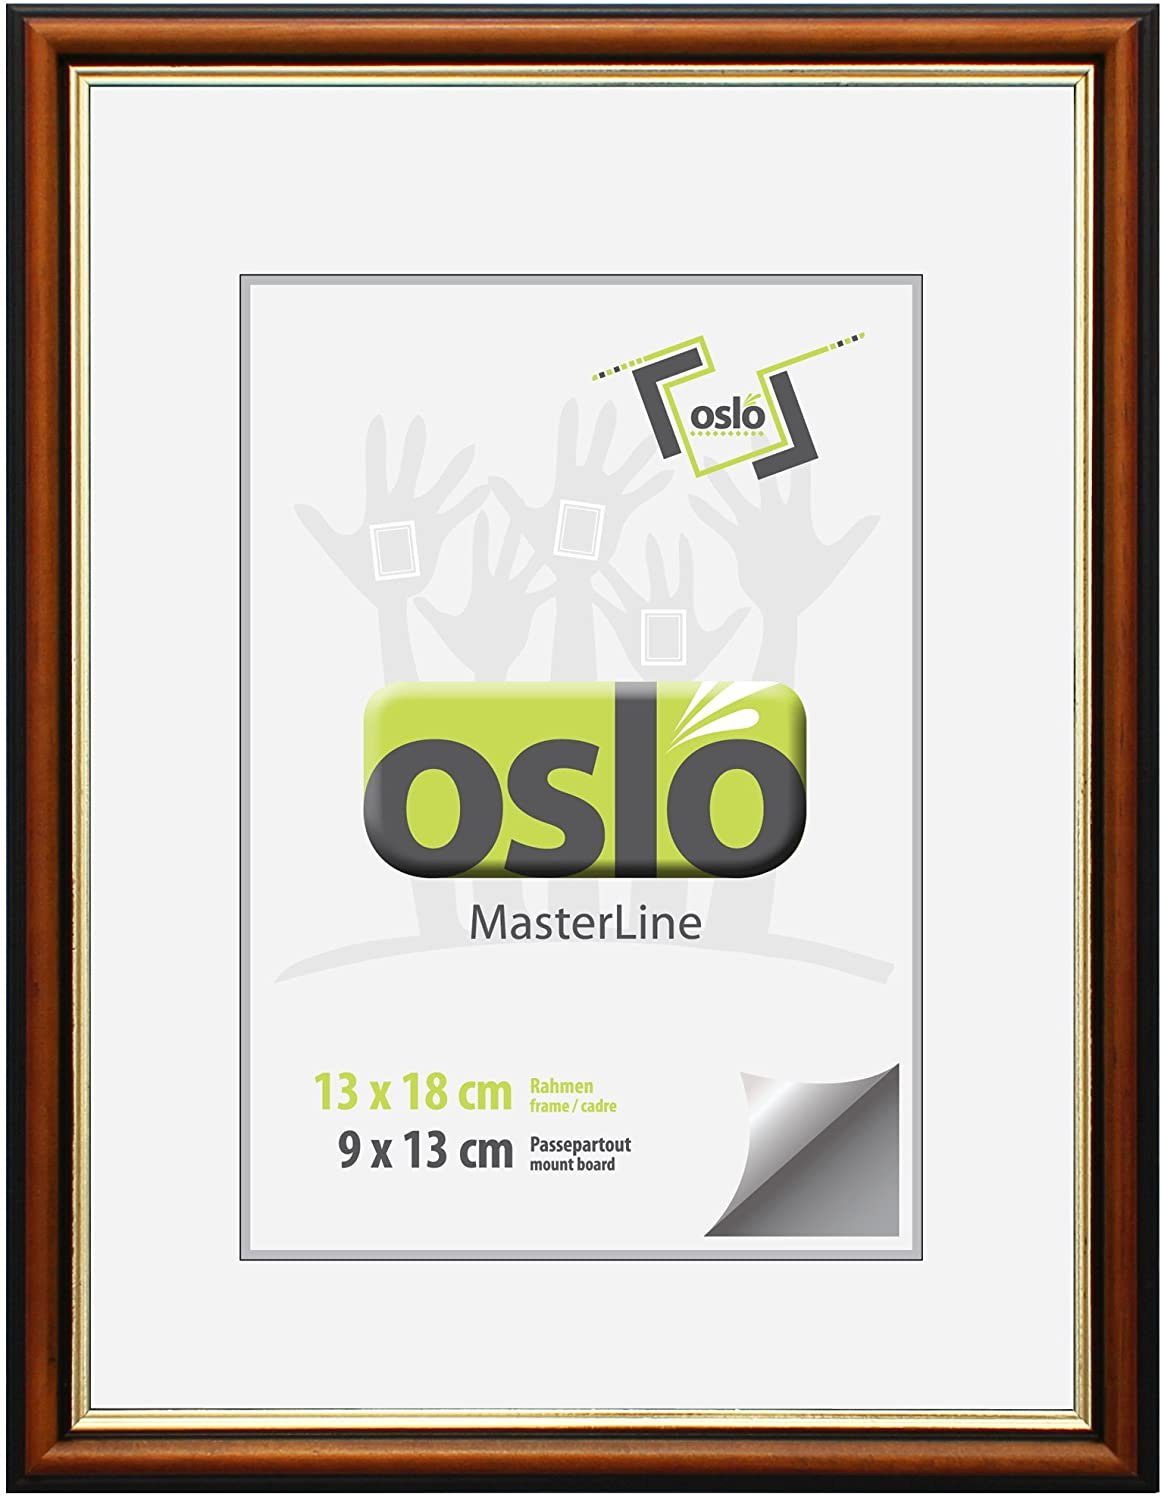 Oslo MasterLine Einzelrahmen Bilderrahmen 13 x 18 cm Holz massiv mit Glasscheibe und Aufsteller, Echtholzrahmen braun-gold FSC-zertifiziert